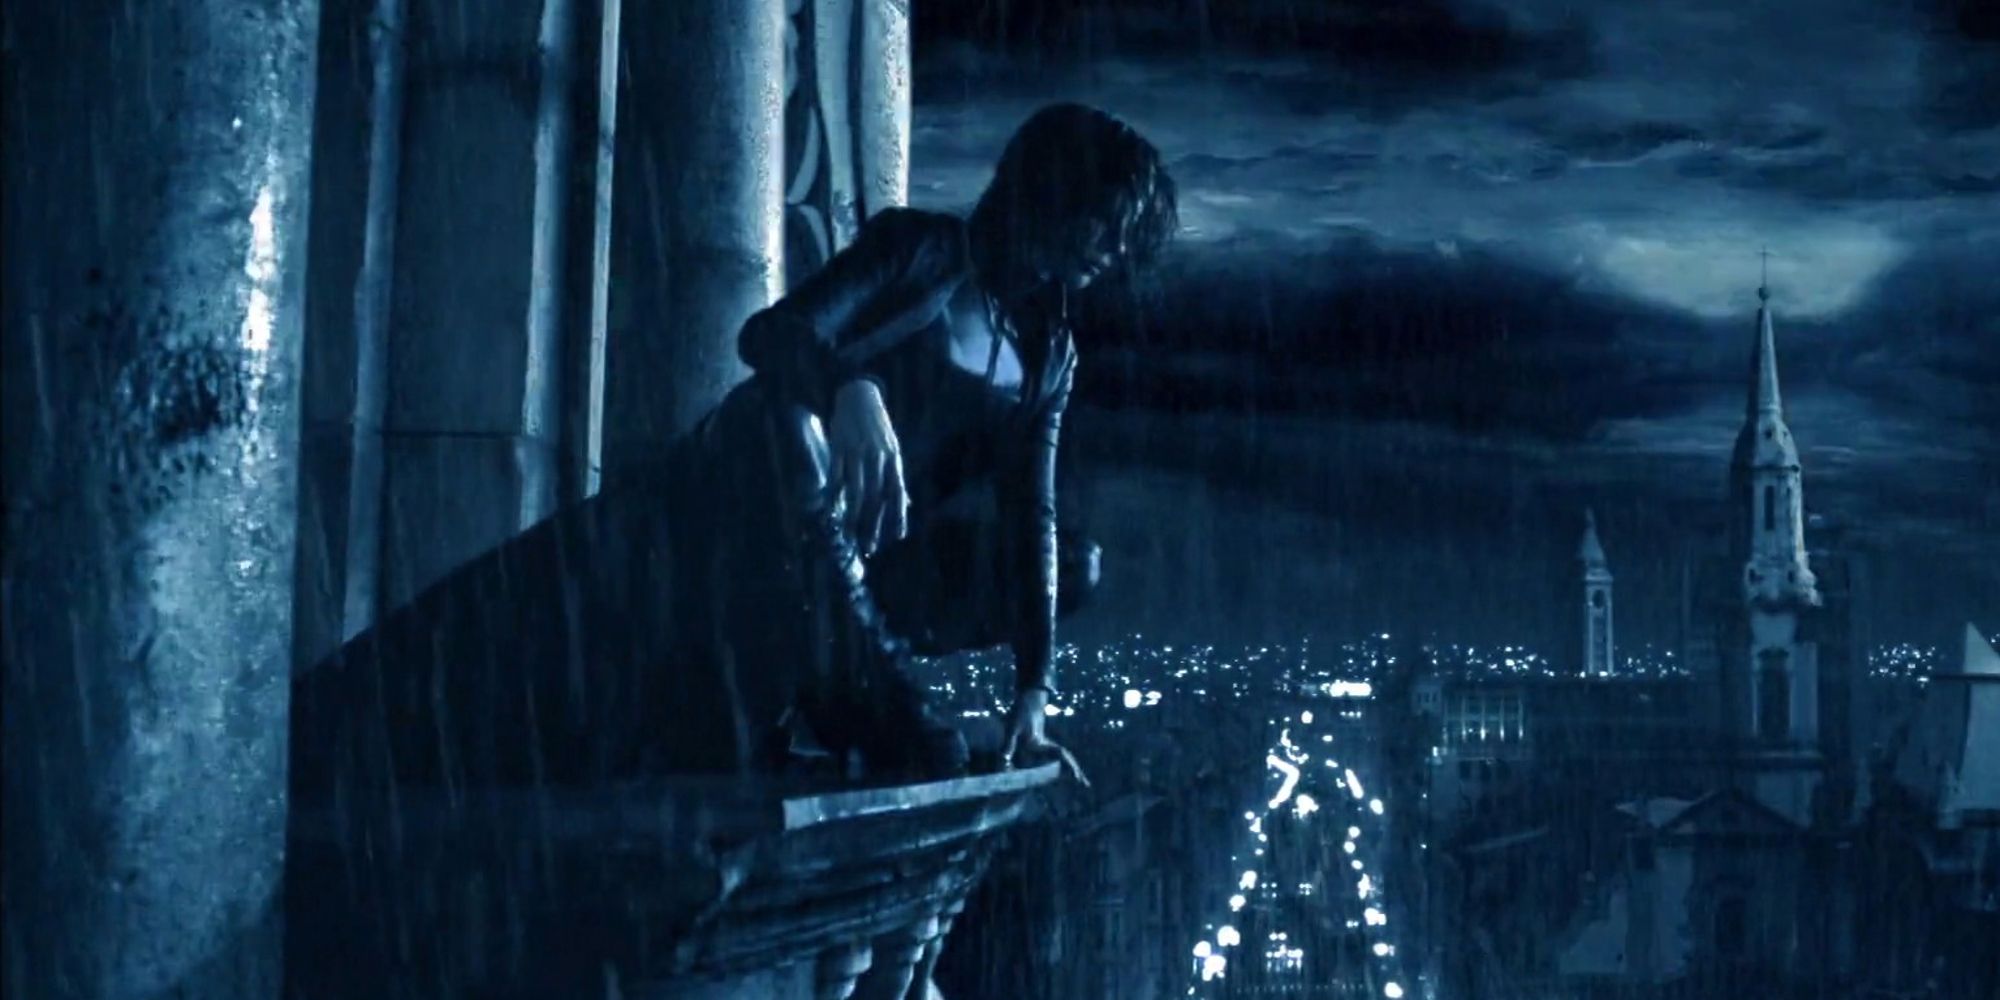 Selene brooding over the city in Underworld (2003)